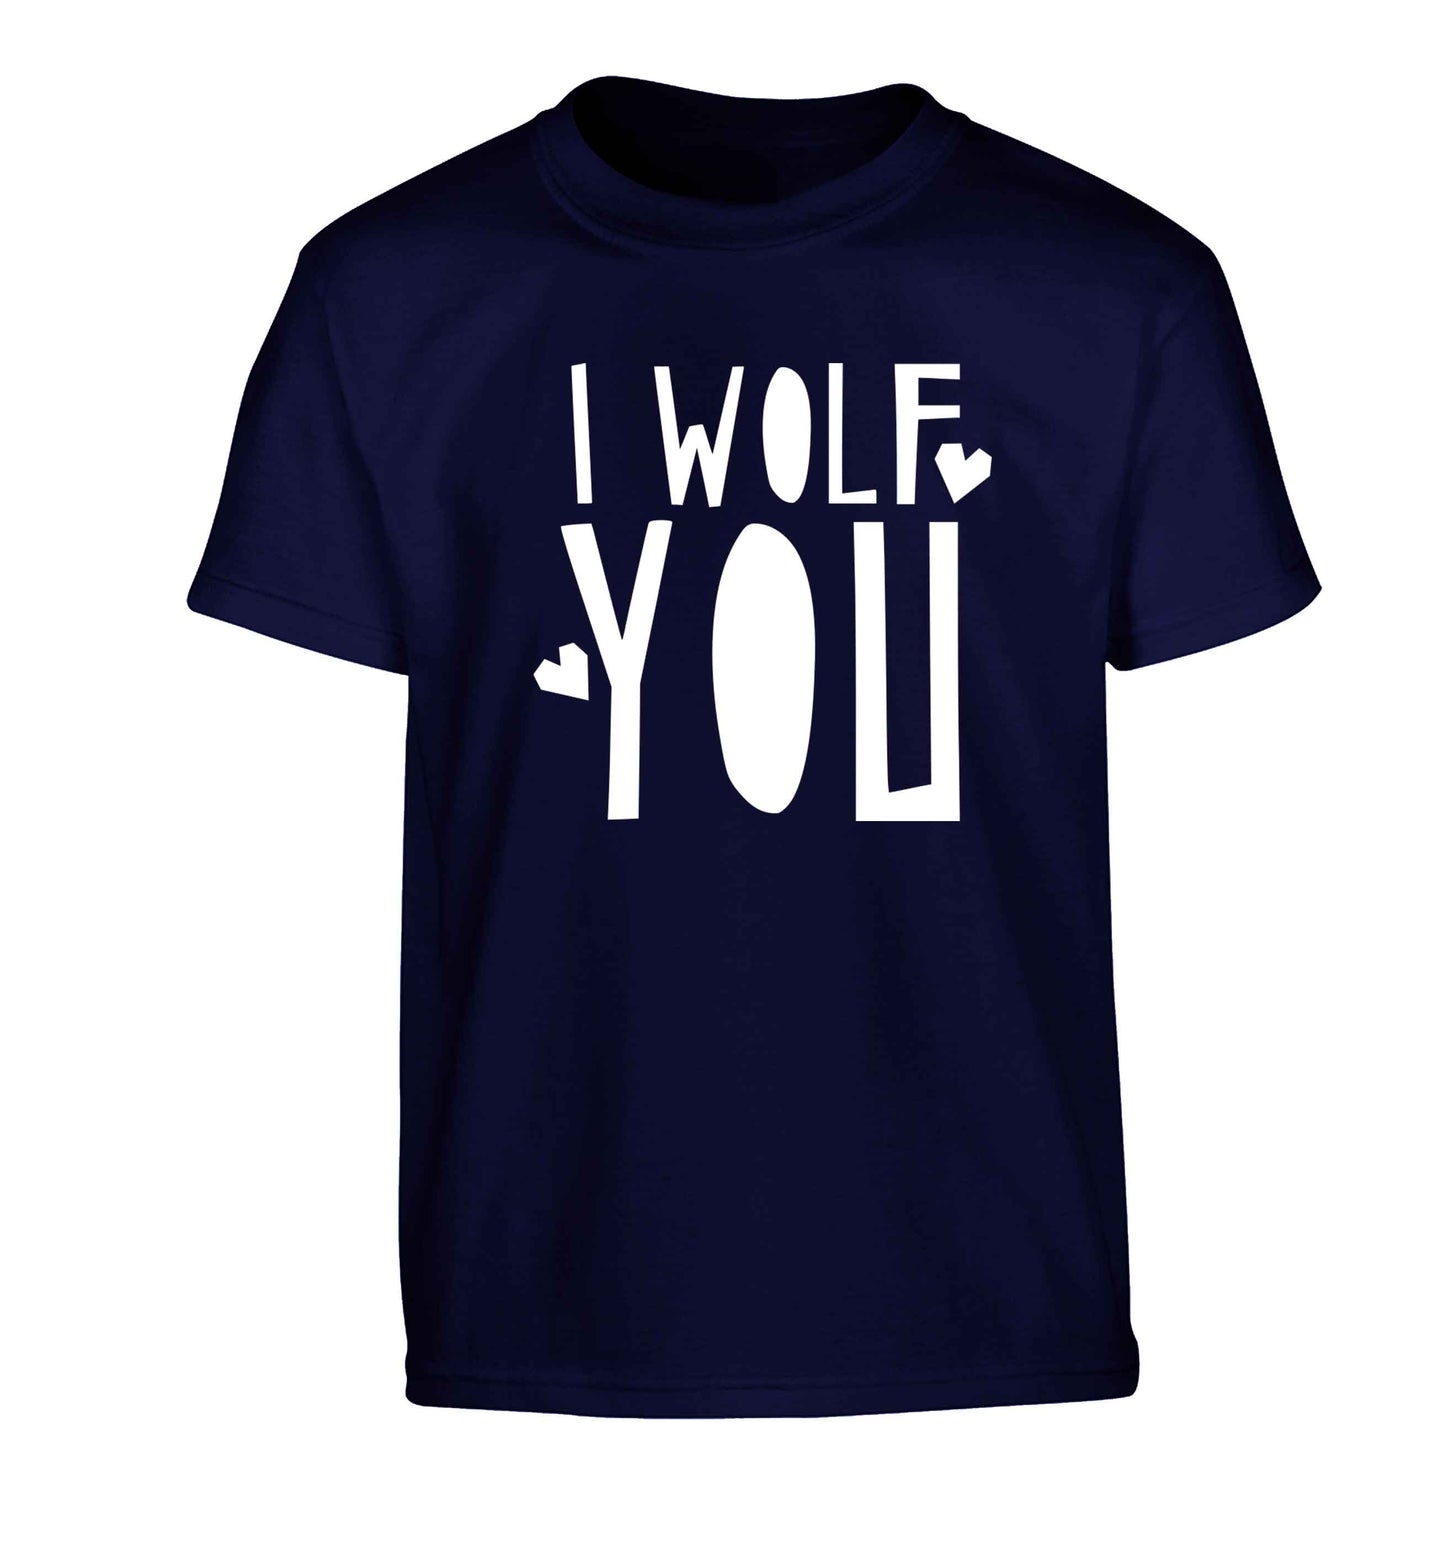 I wolf you Children's navy Tshirt 12-13 Years